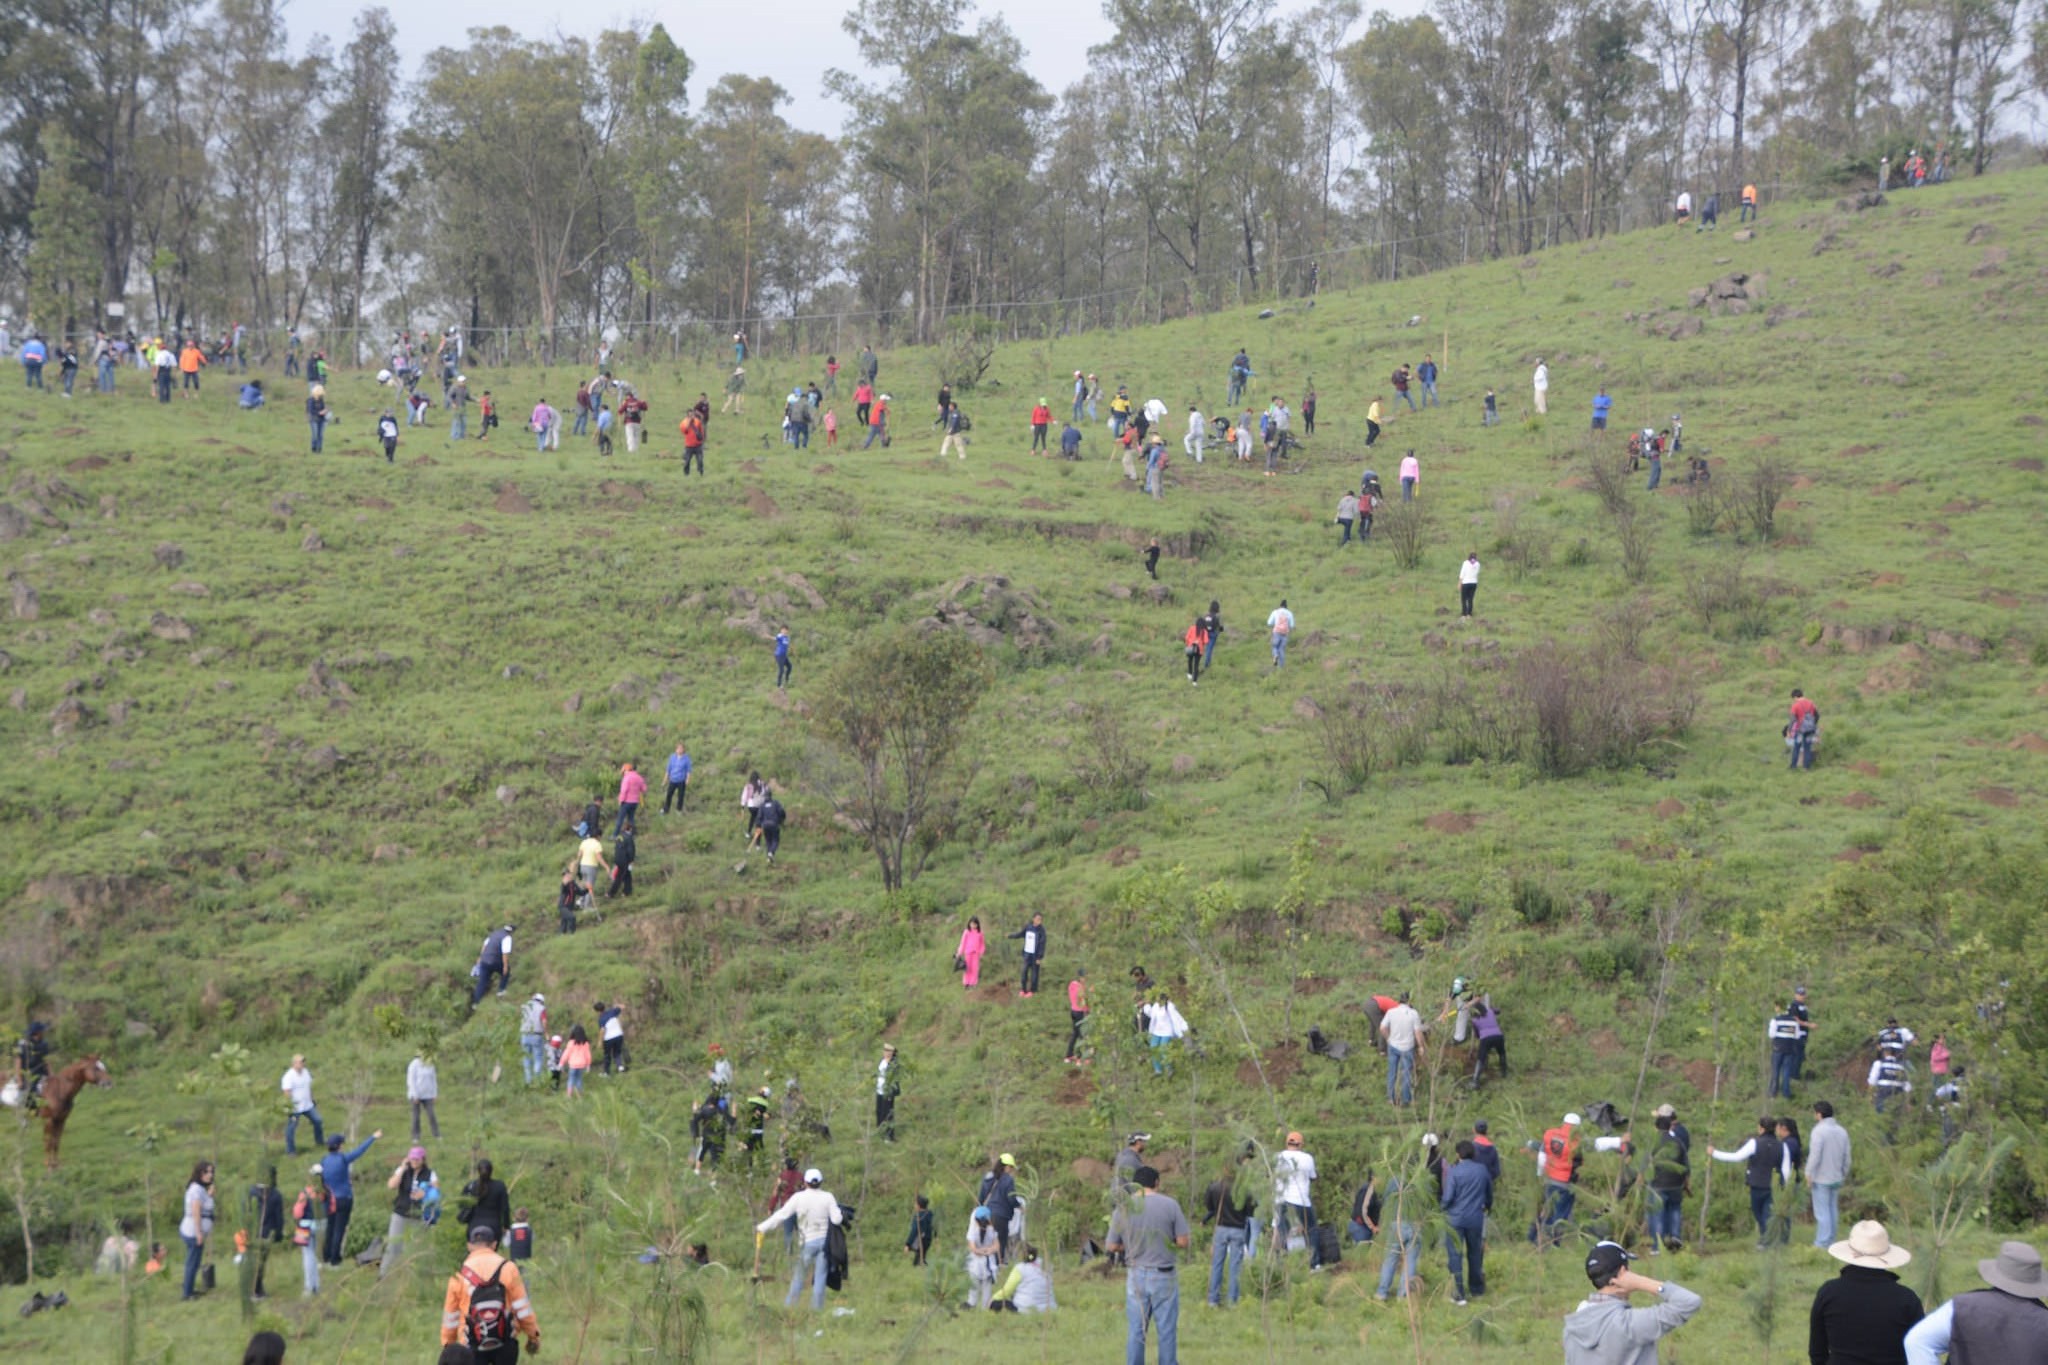 Plantan 2 mil árboles en reforestación del cerro Zapotecas